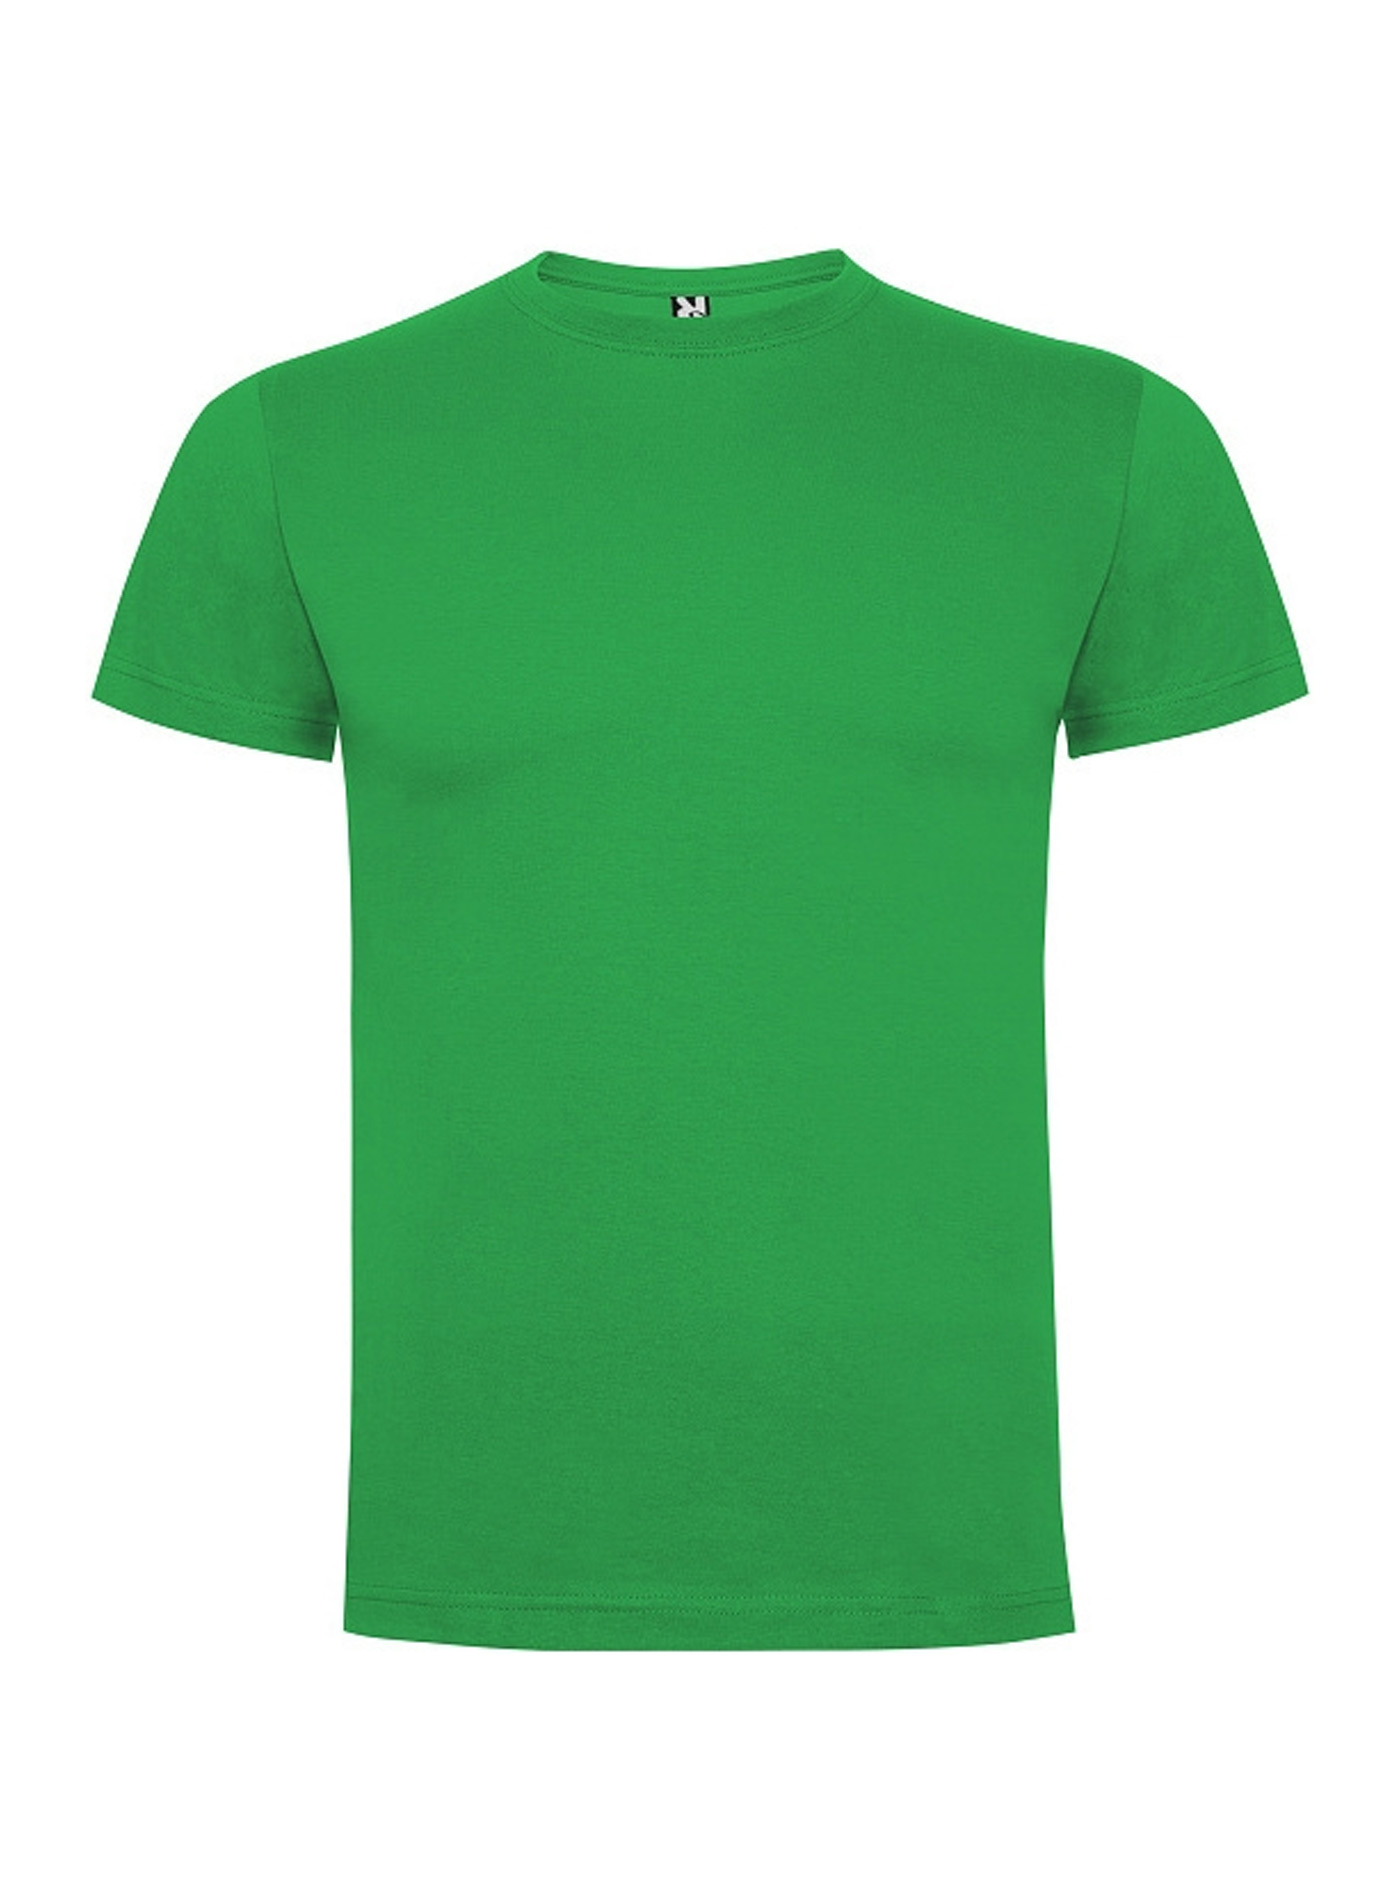 Pánské tričko Roly Dogo premium - Irská zelená S